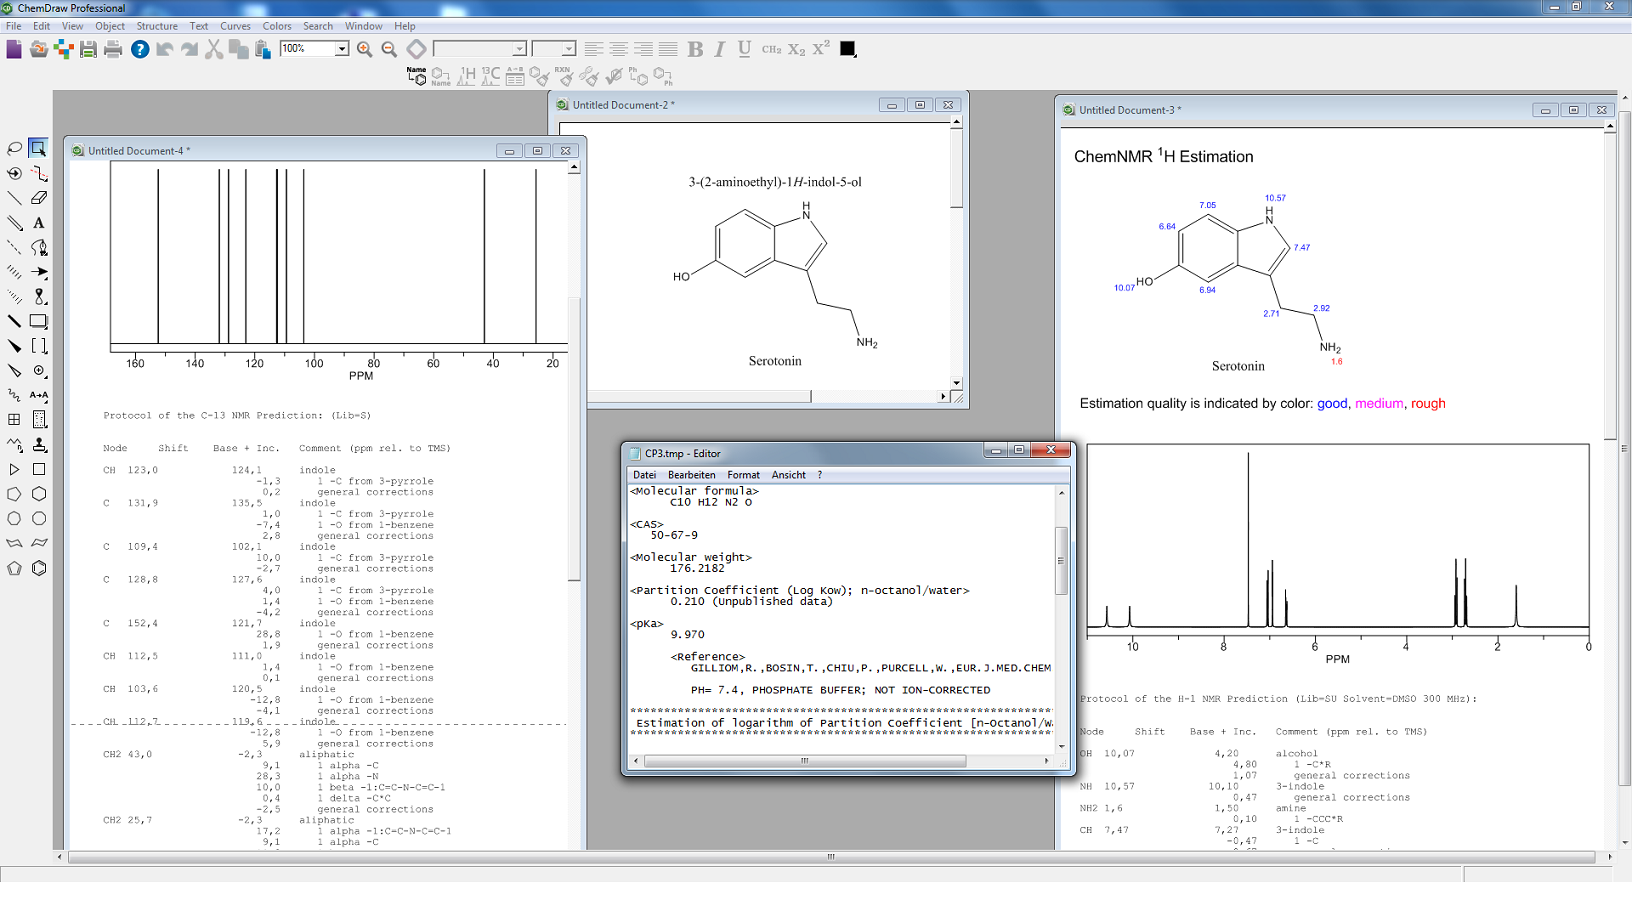 ChemDraw Professional: Chemische Eigenschaften und prognostizierte 1H- & 13C-NMR-Spektren am Beispiel von Serotonin